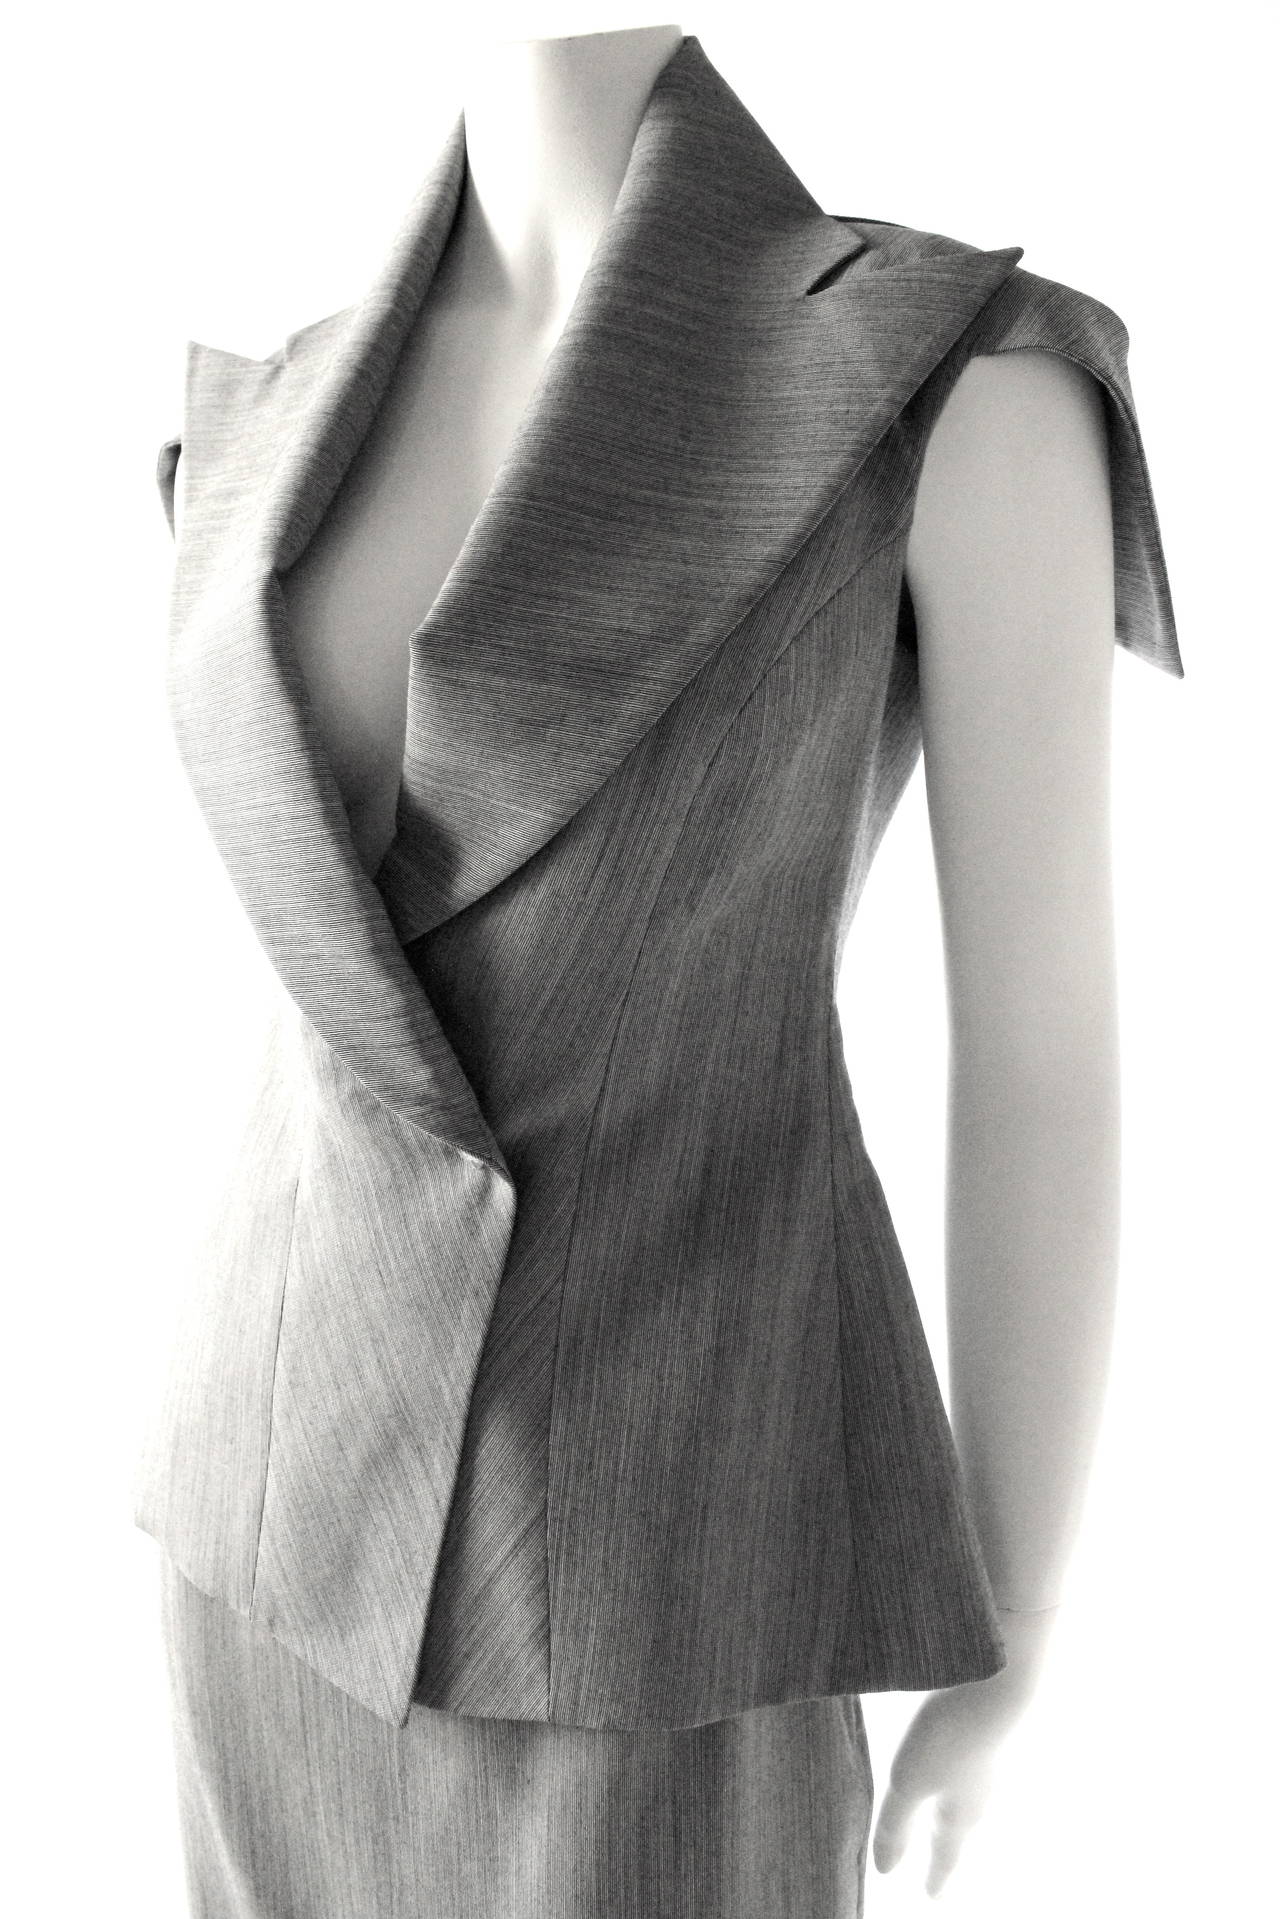 Women's Alexander Mcqueen 1999 Runway 'No13' Collection Origami Suit